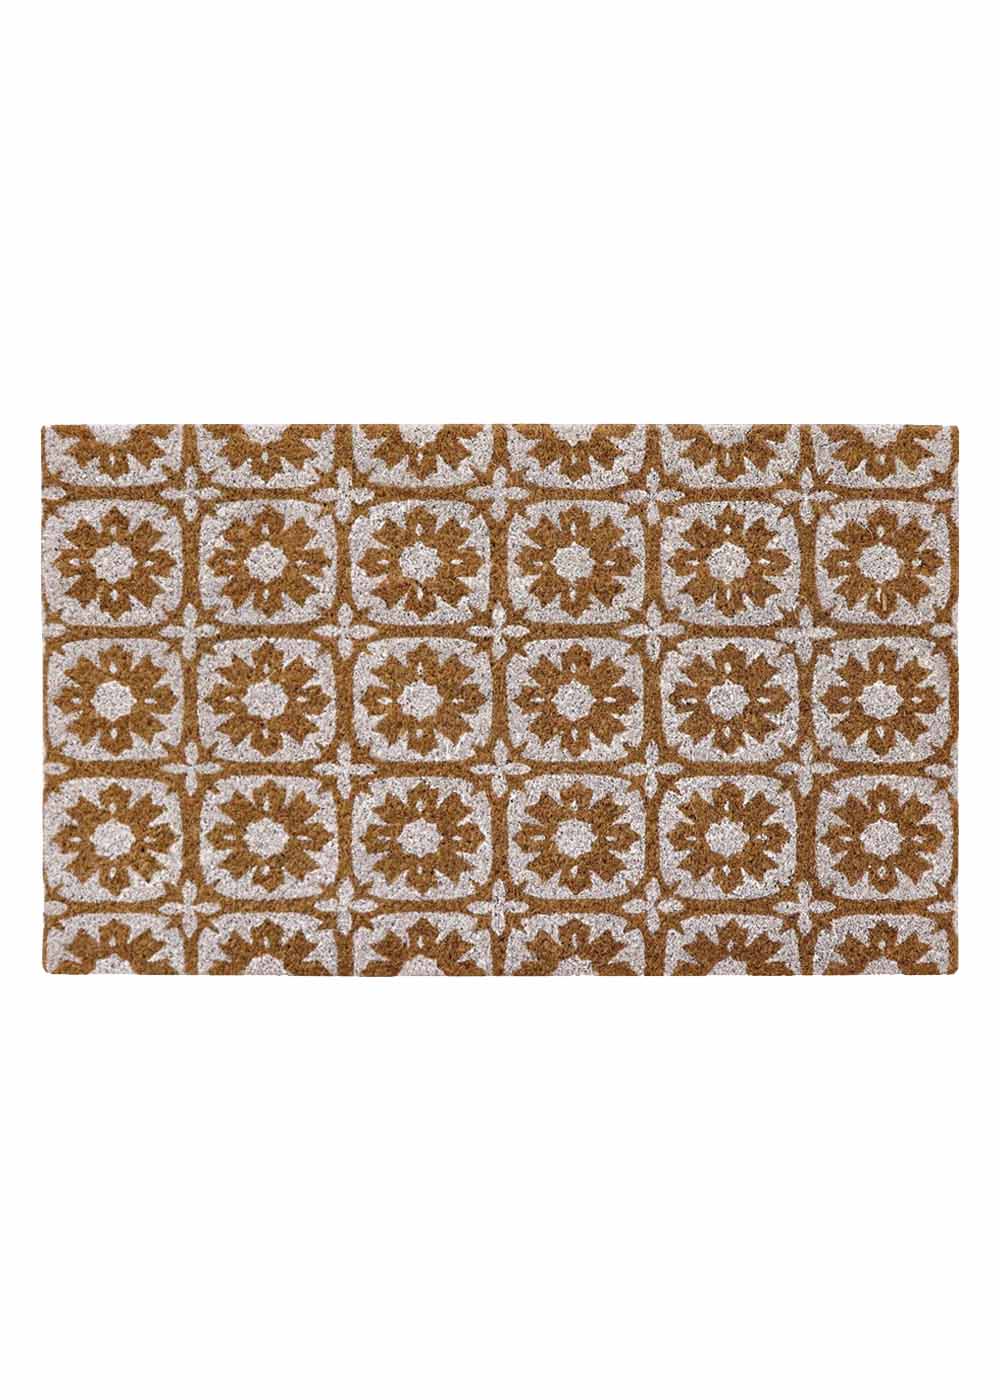 PVC Backed Coir Doormat - White Tiles